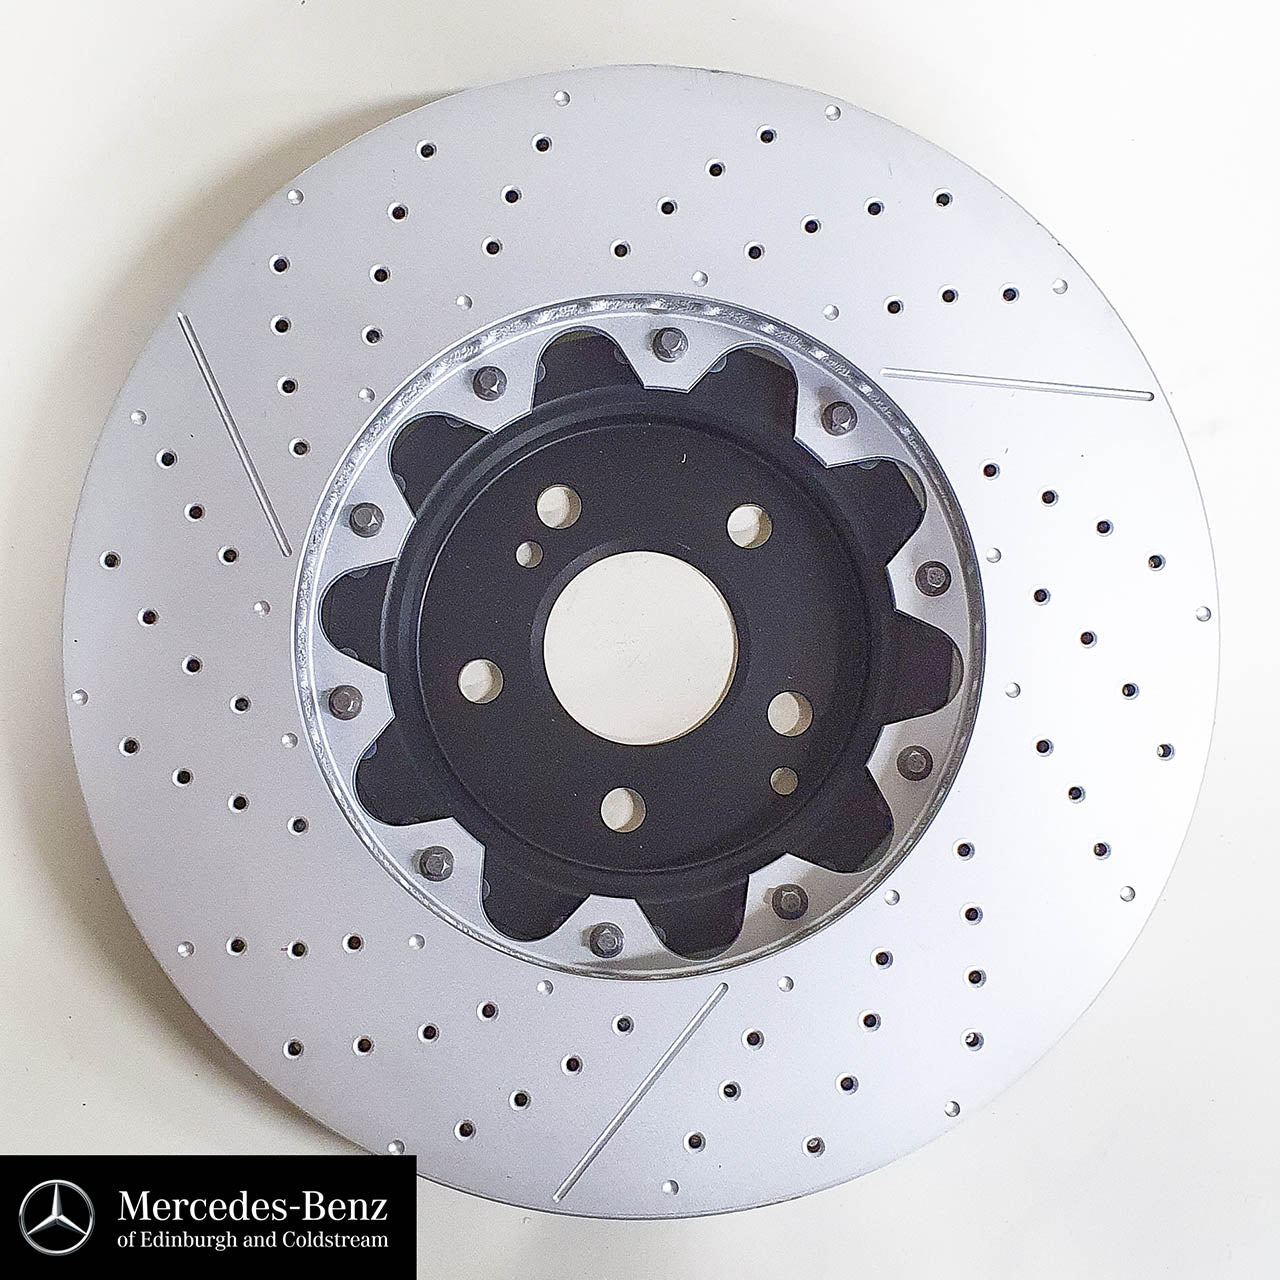 Genuine Mercedes-Benz AMG floating front brake discs set of 2